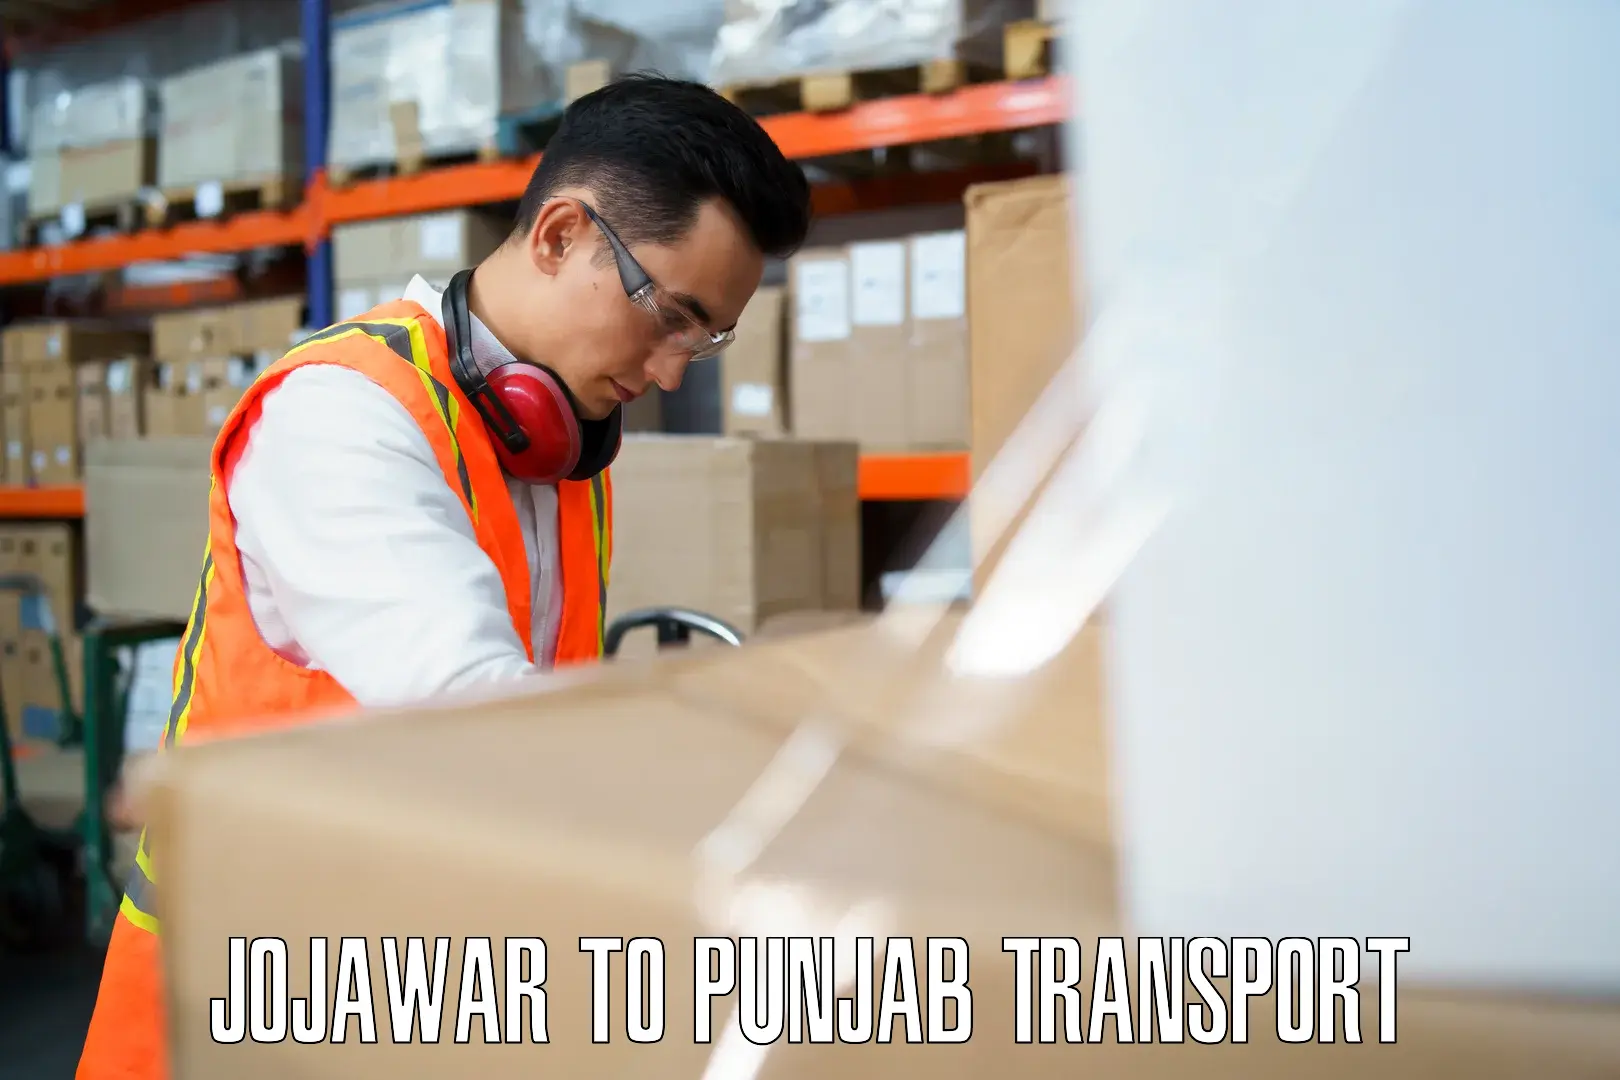 Air freight transport services Jojawar to IIT Ropar